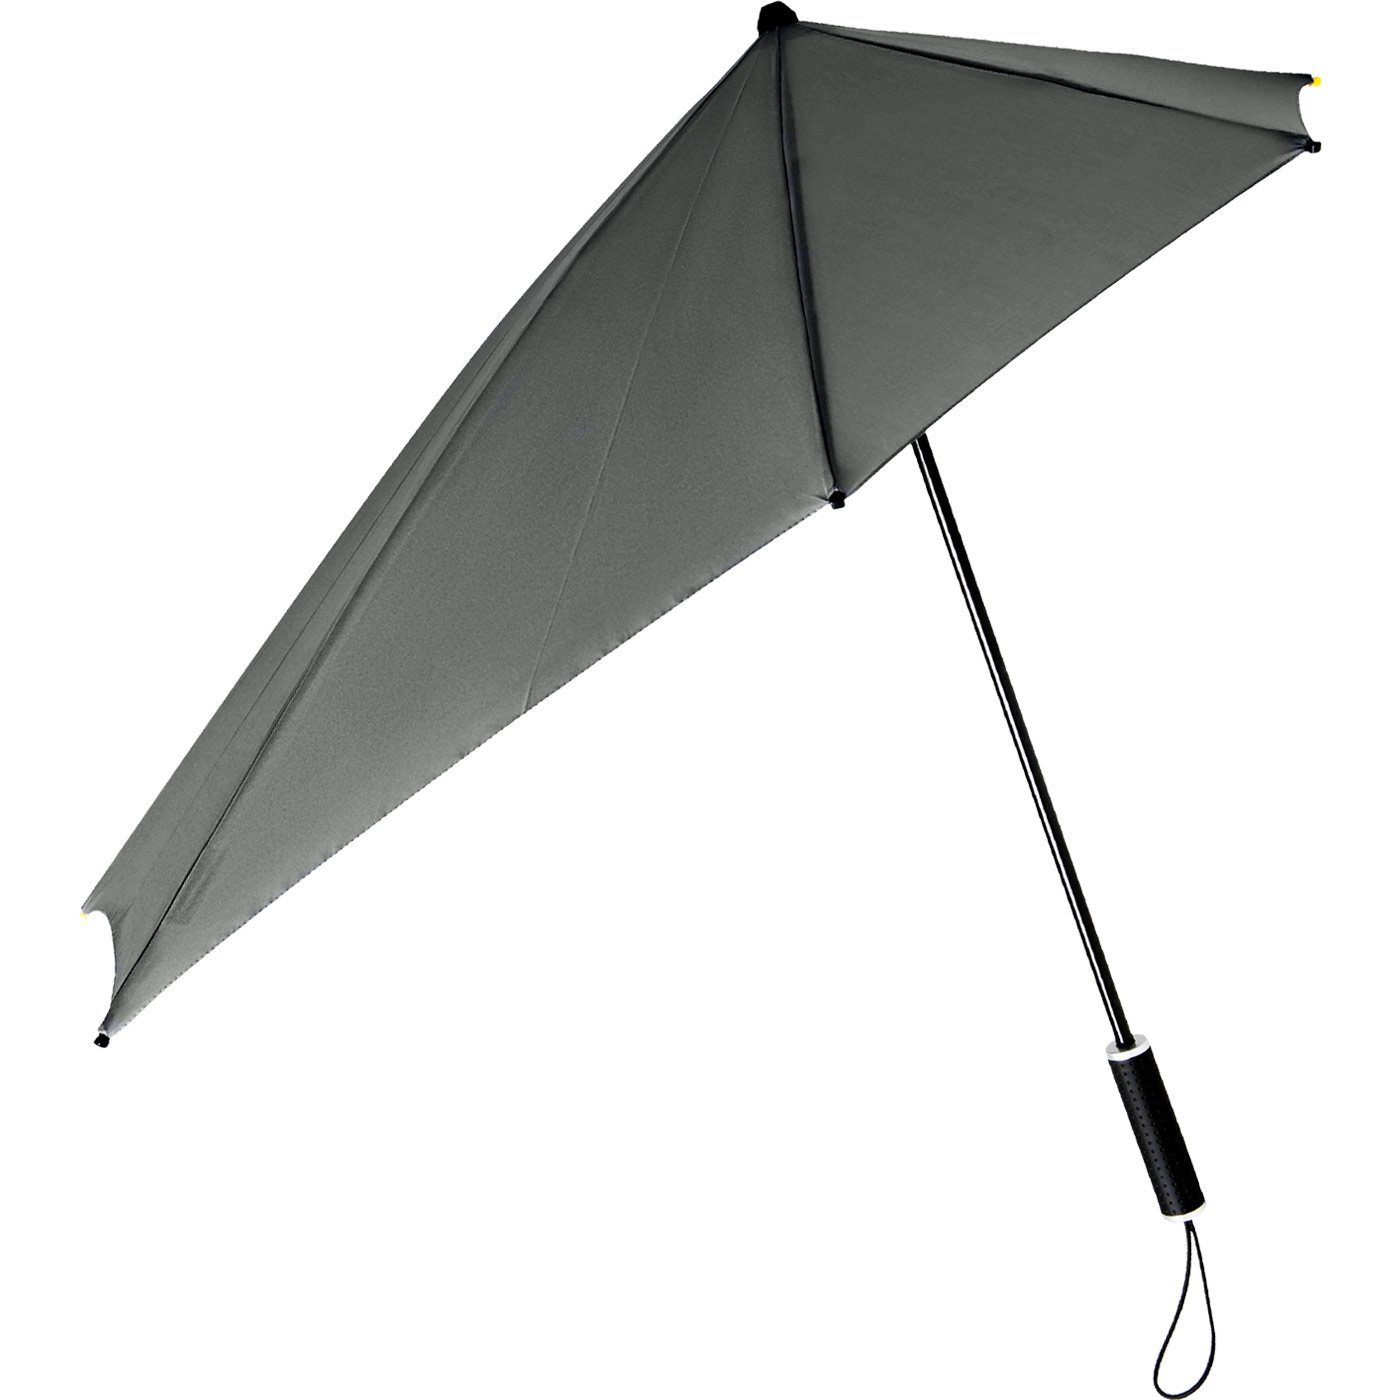 100 der besondere Stockregenschirm km/h aus zu durch STORMaxi dreht seine Form Schirm in hält sich Regenschirm, aerodynamischer Wind, Sturmschirm Impliva den bis